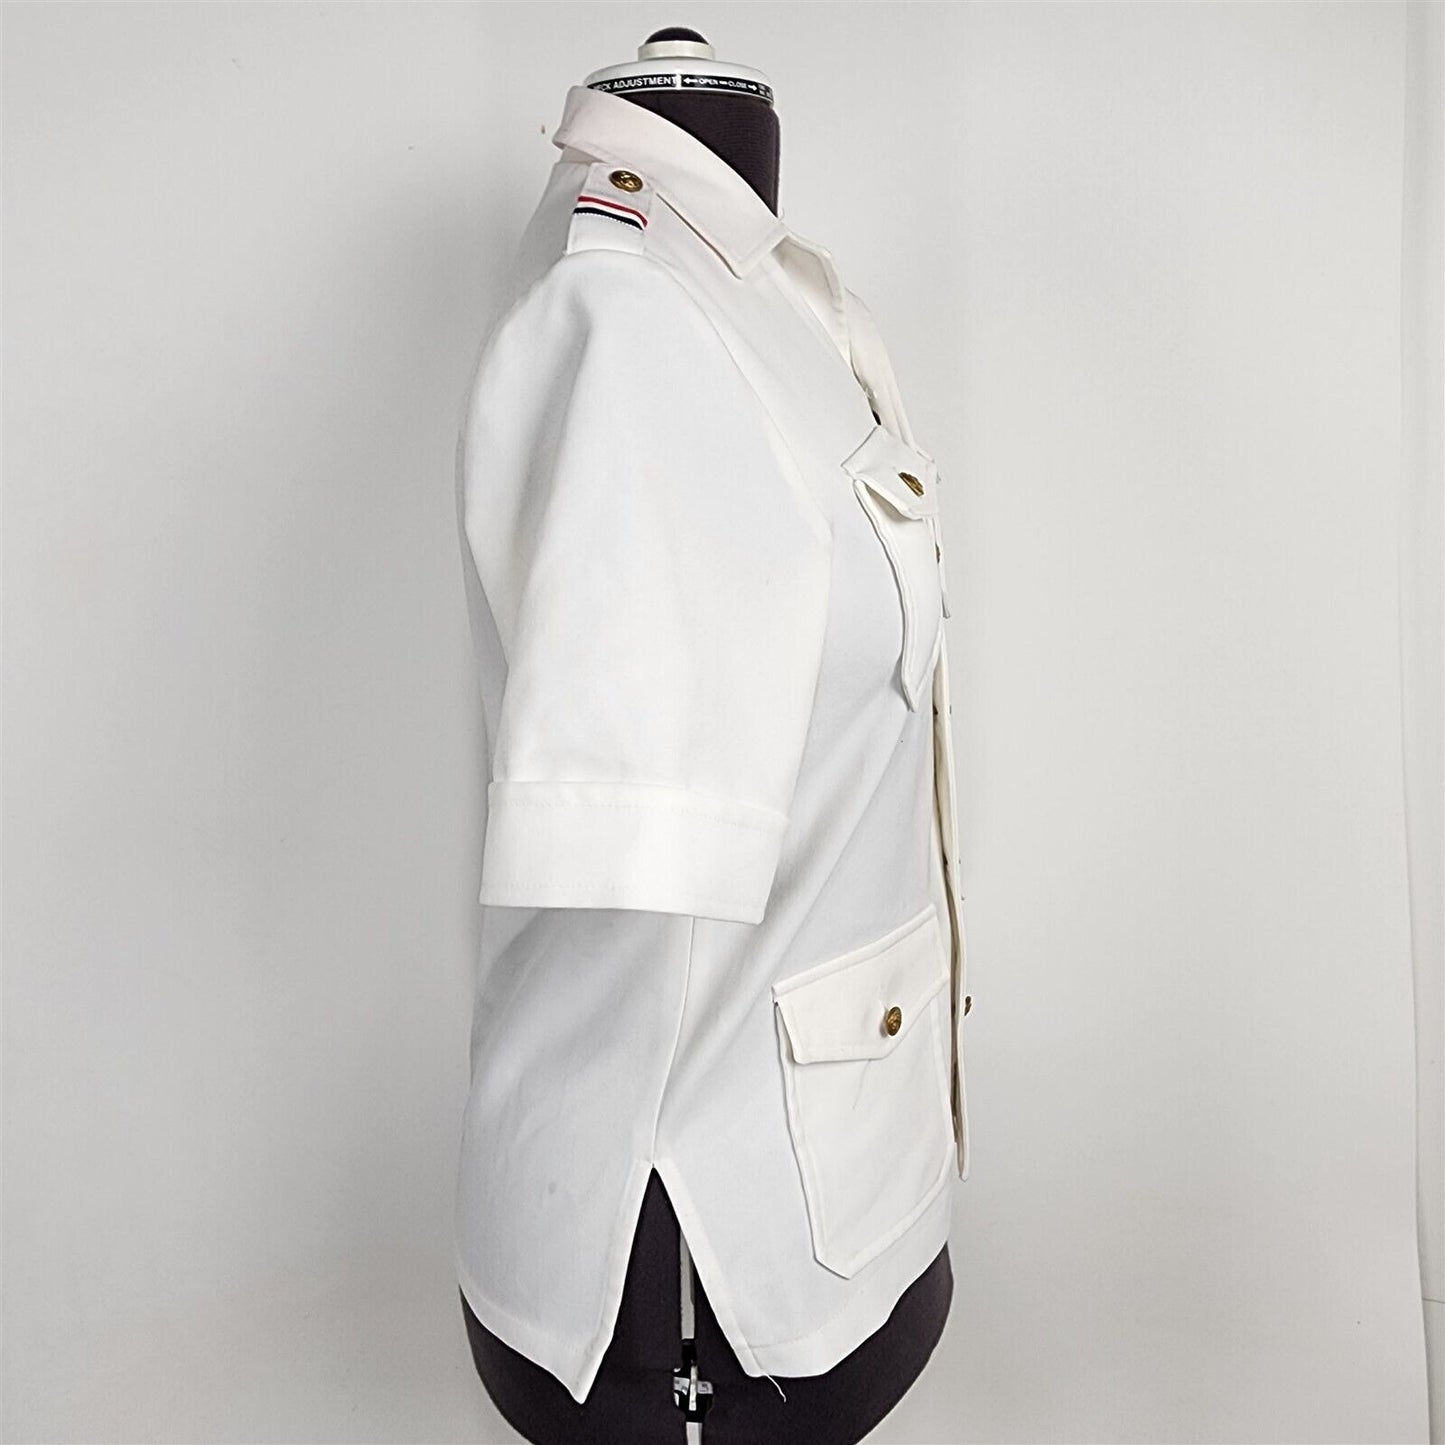 Vintage Dana Point White Uniform Button Front Top Womens Size 6/8